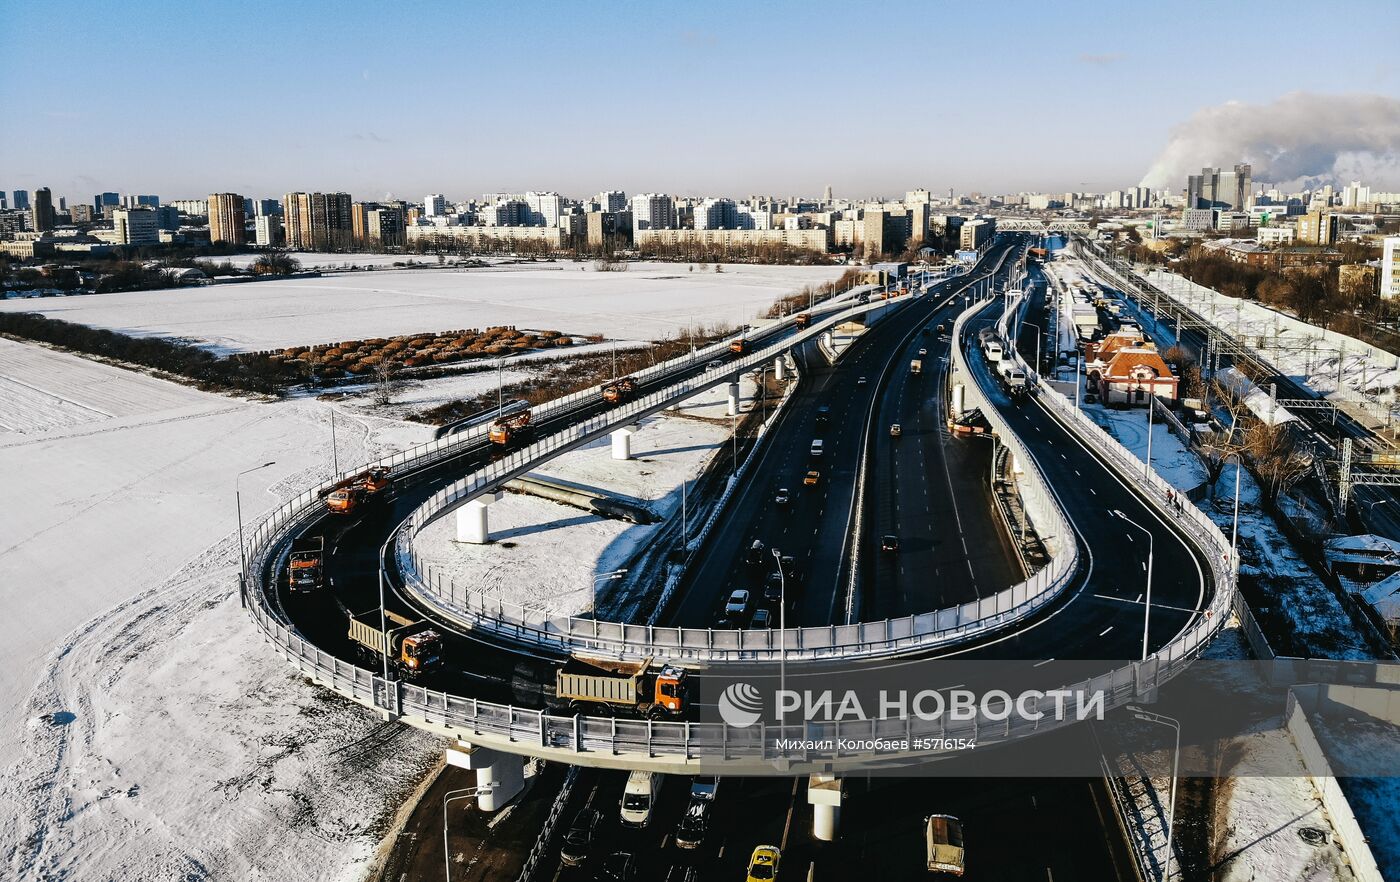 Мэр Москвы С. Собянин открыл новую эстакаду на севере Москвы